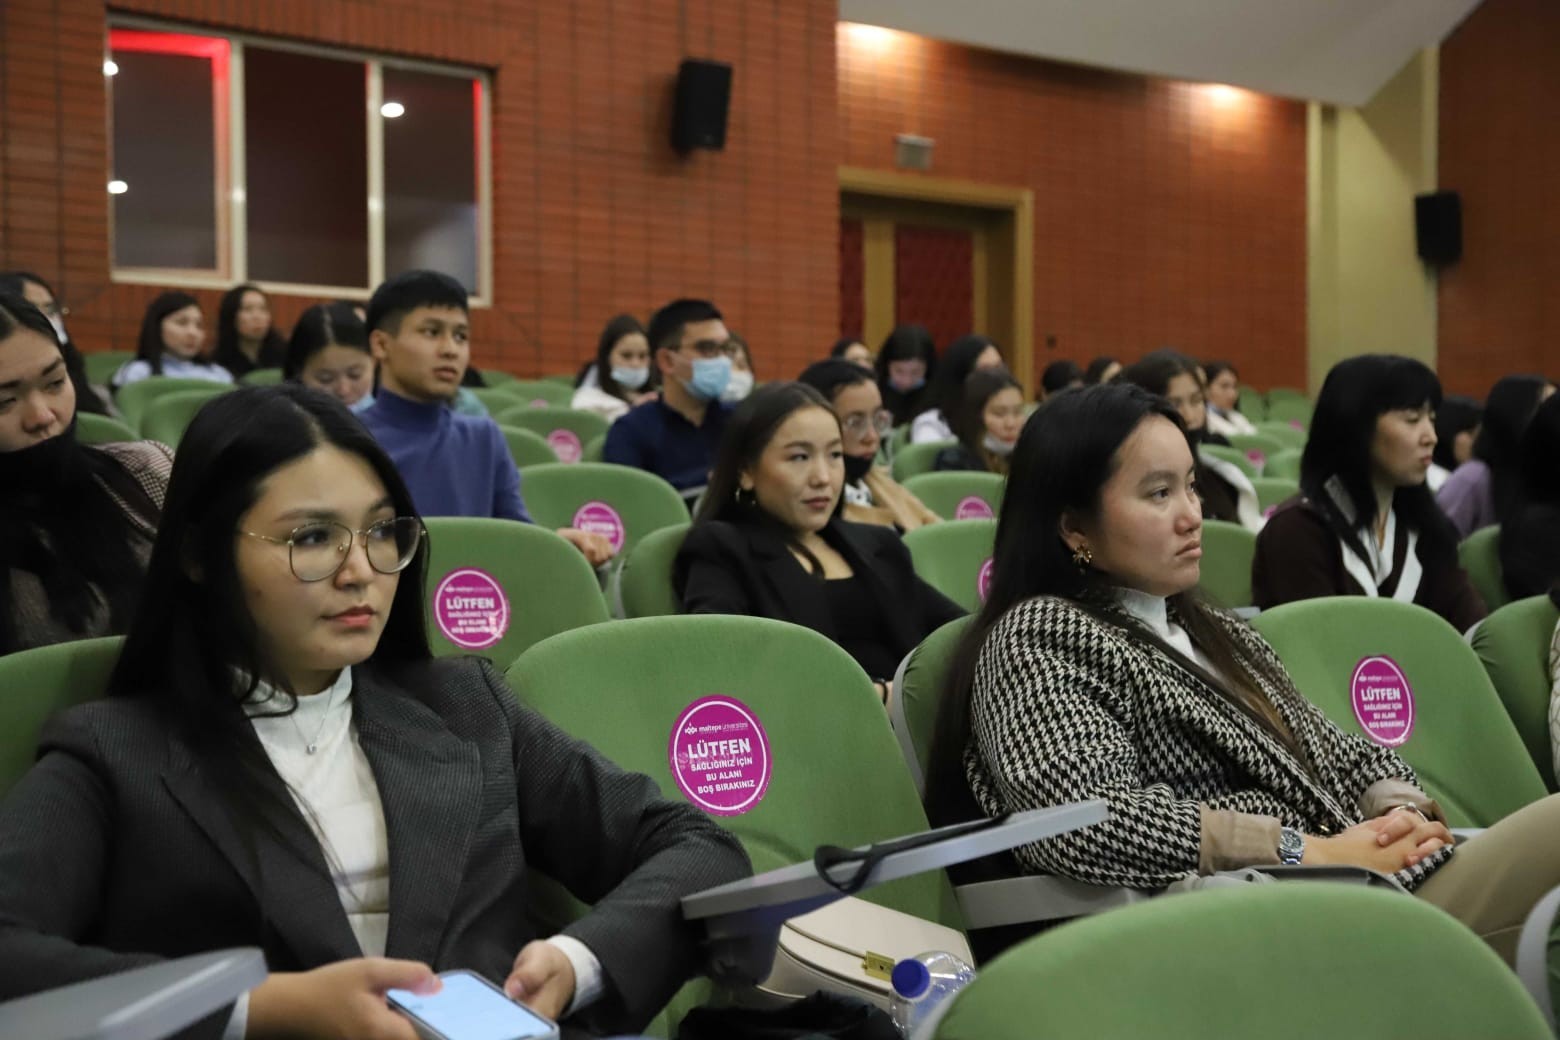 Kartal Belediyesi’nden Kazakistanlı öğrencilere afet bilinçlendirme eğitimi #istanbul